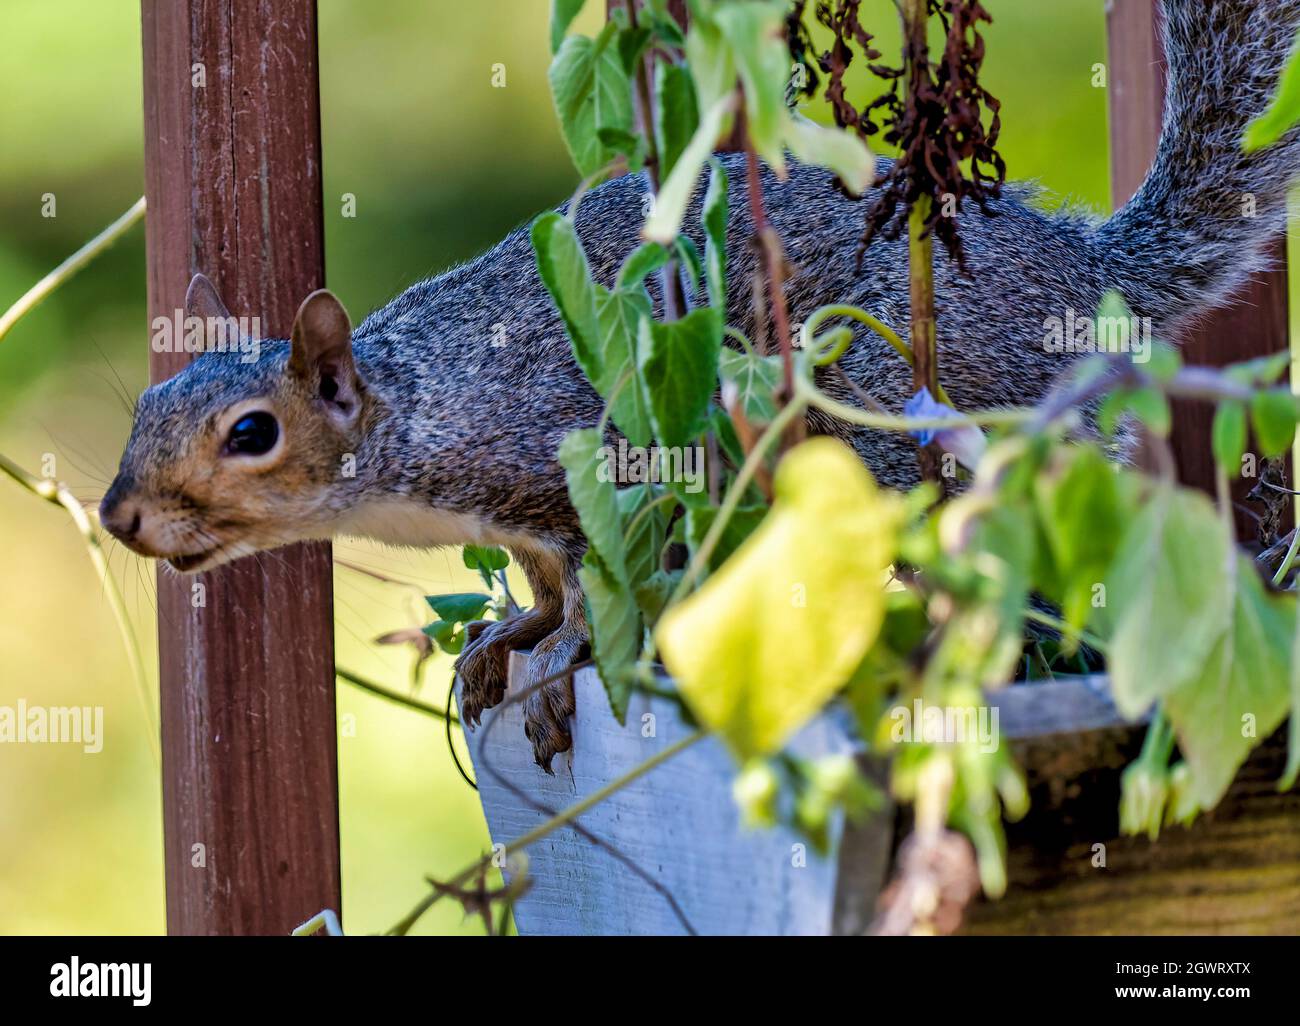 Lo scoiattolo si prepara a saltare da una pentola di fiori Foto Stock